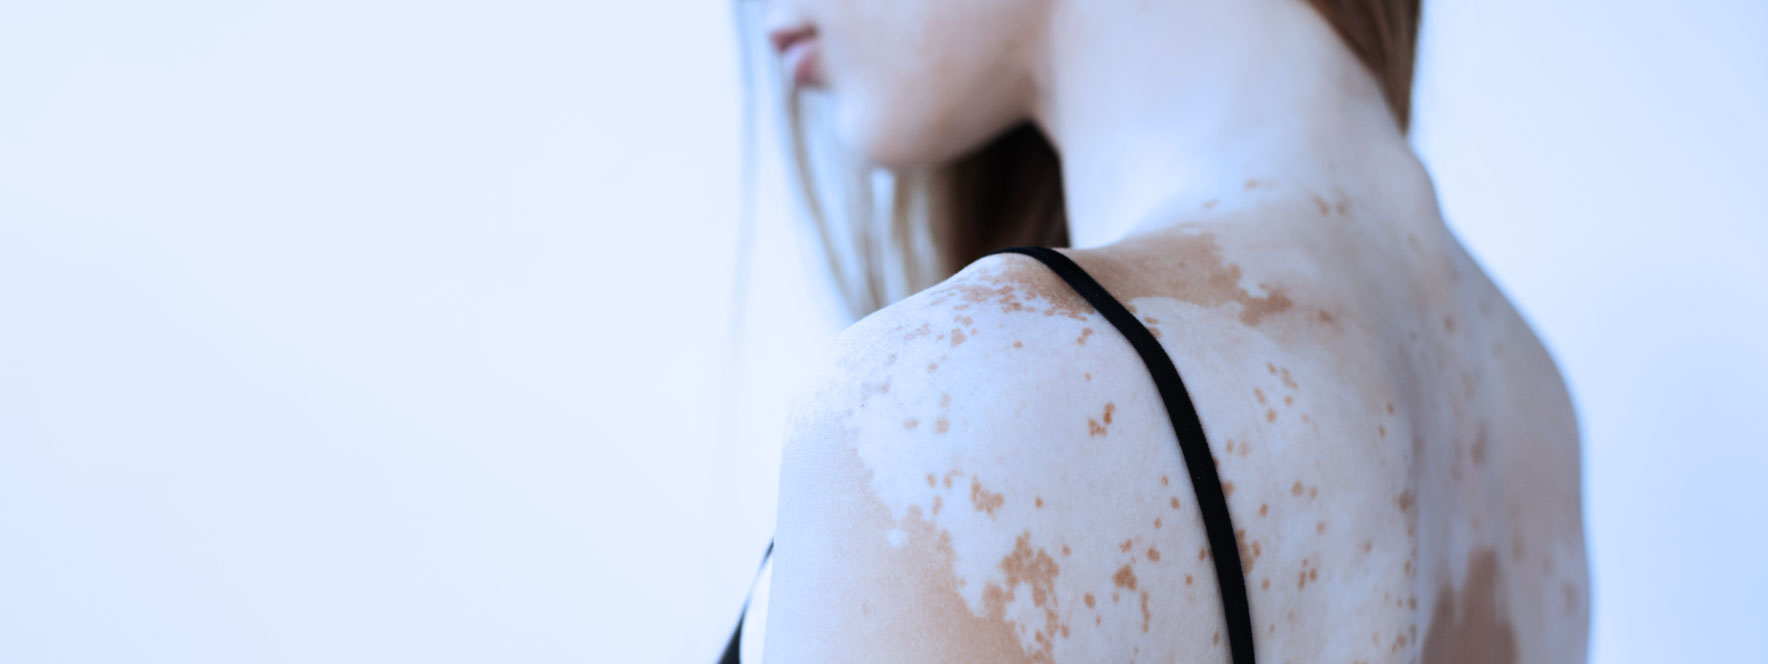 Troubles cutanés - vitiligo - Blogue du Réseau des massothérapeutes